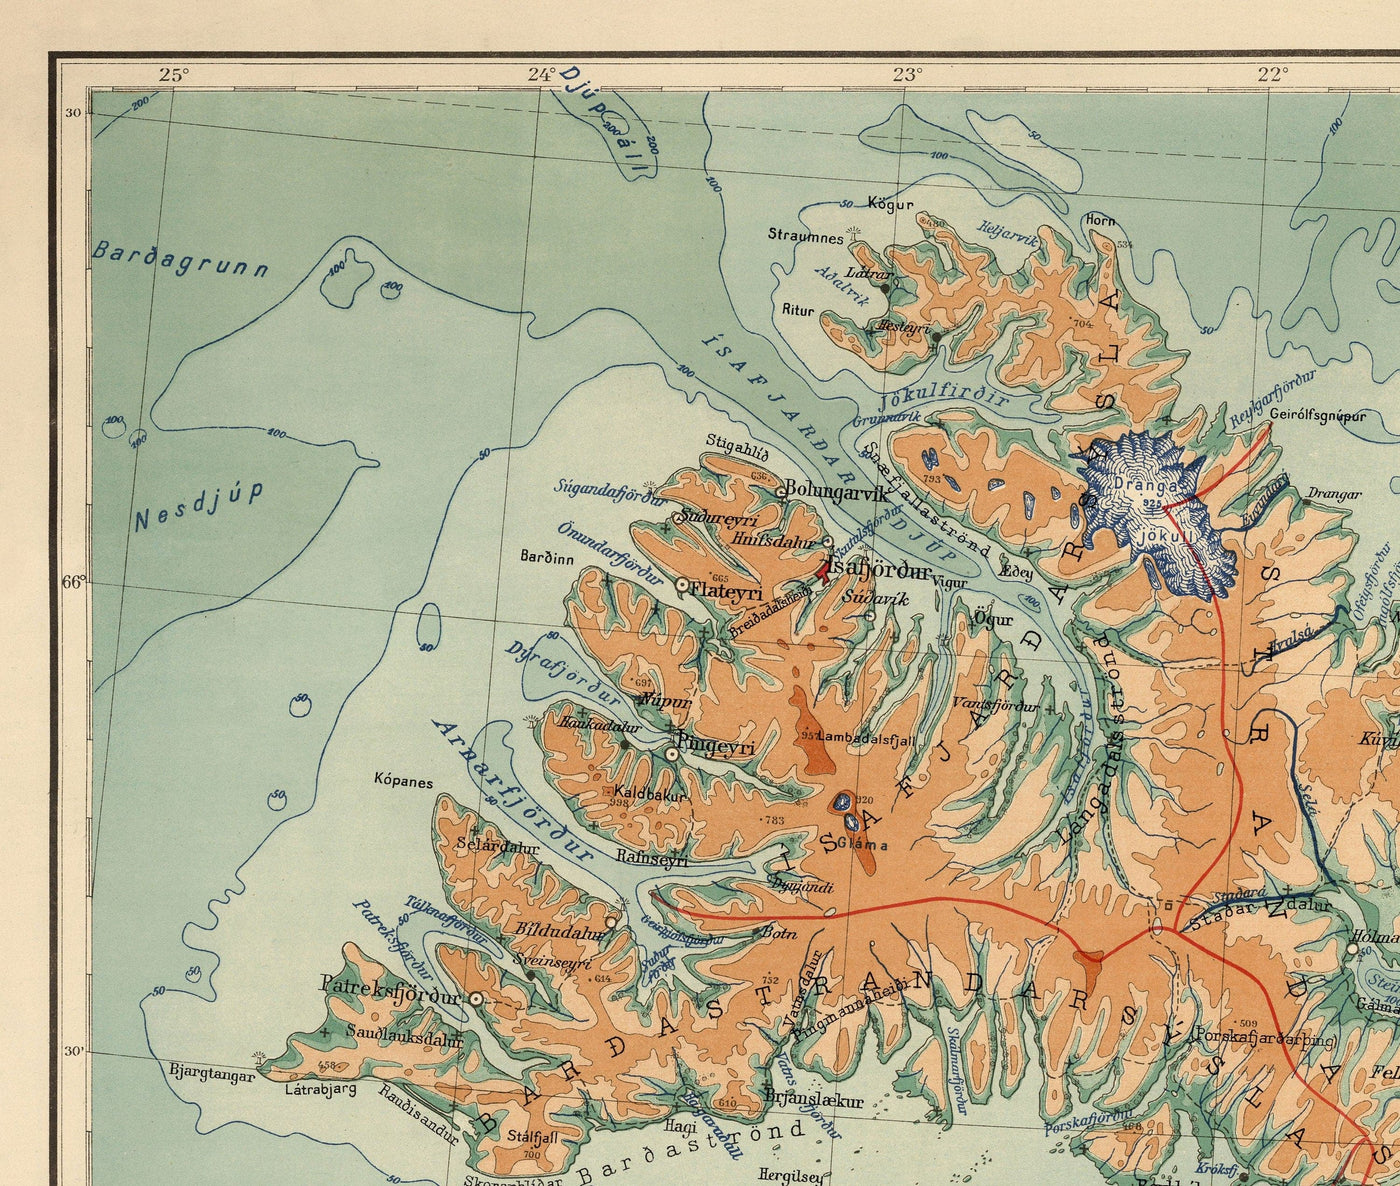 Alte Karte von Island von Samuel Eggertsson, 1928 - Reykjavik, Keflavik, Geysir, Gulfoss, Vulkane, Gletscher